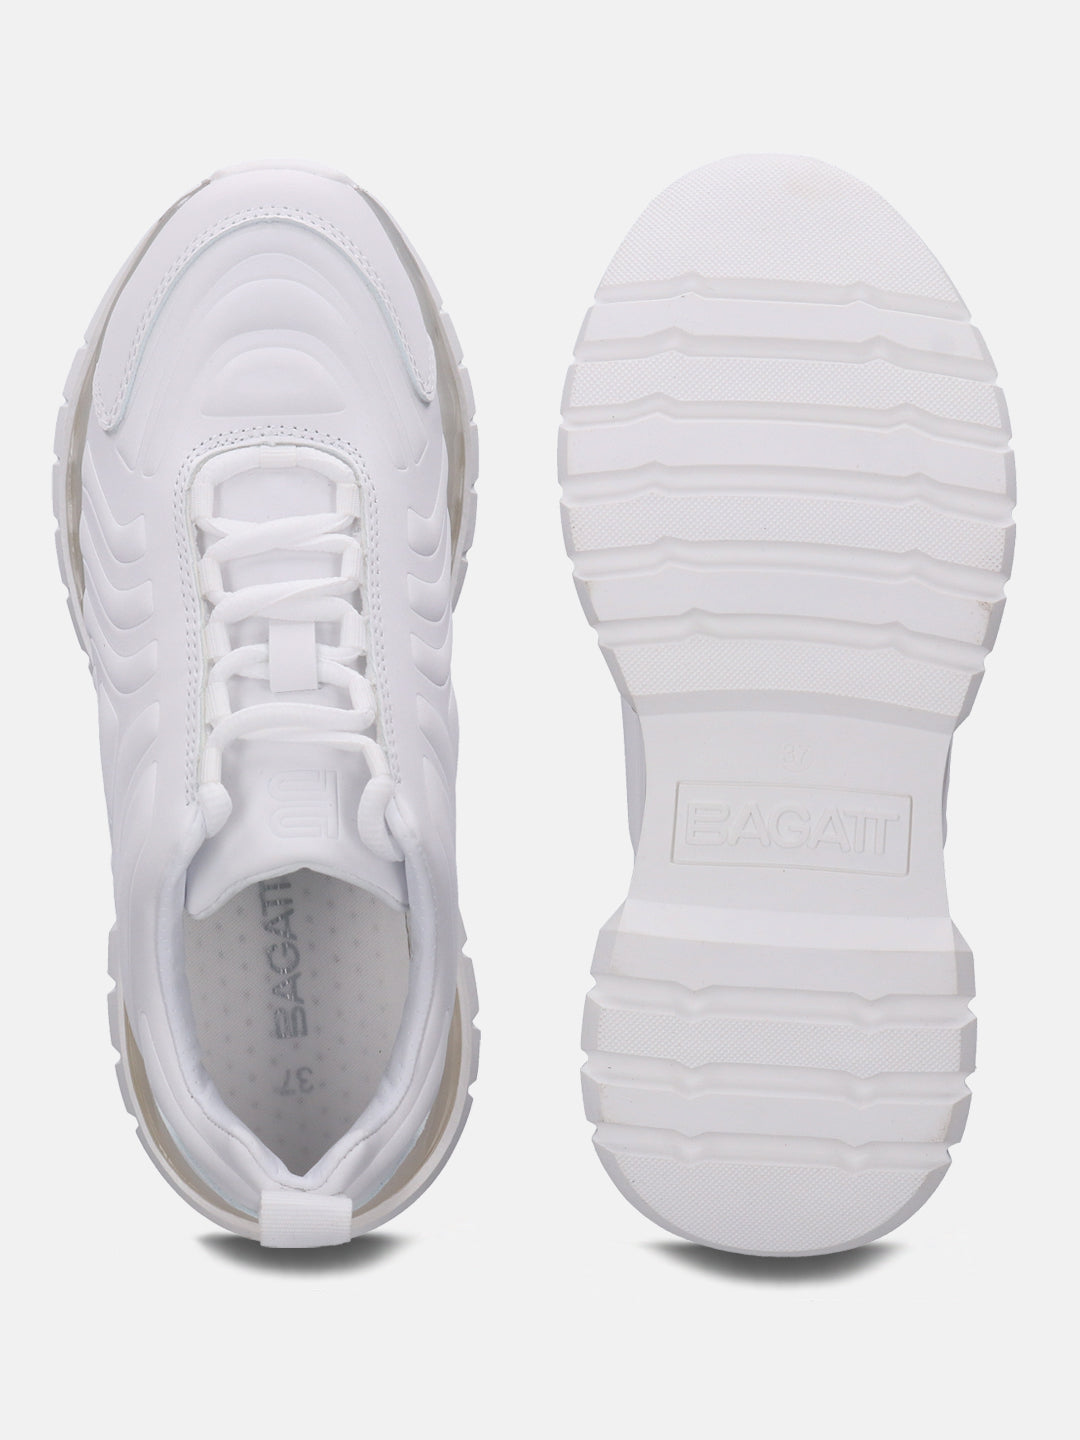 Athena White Sneakers - BAGATT